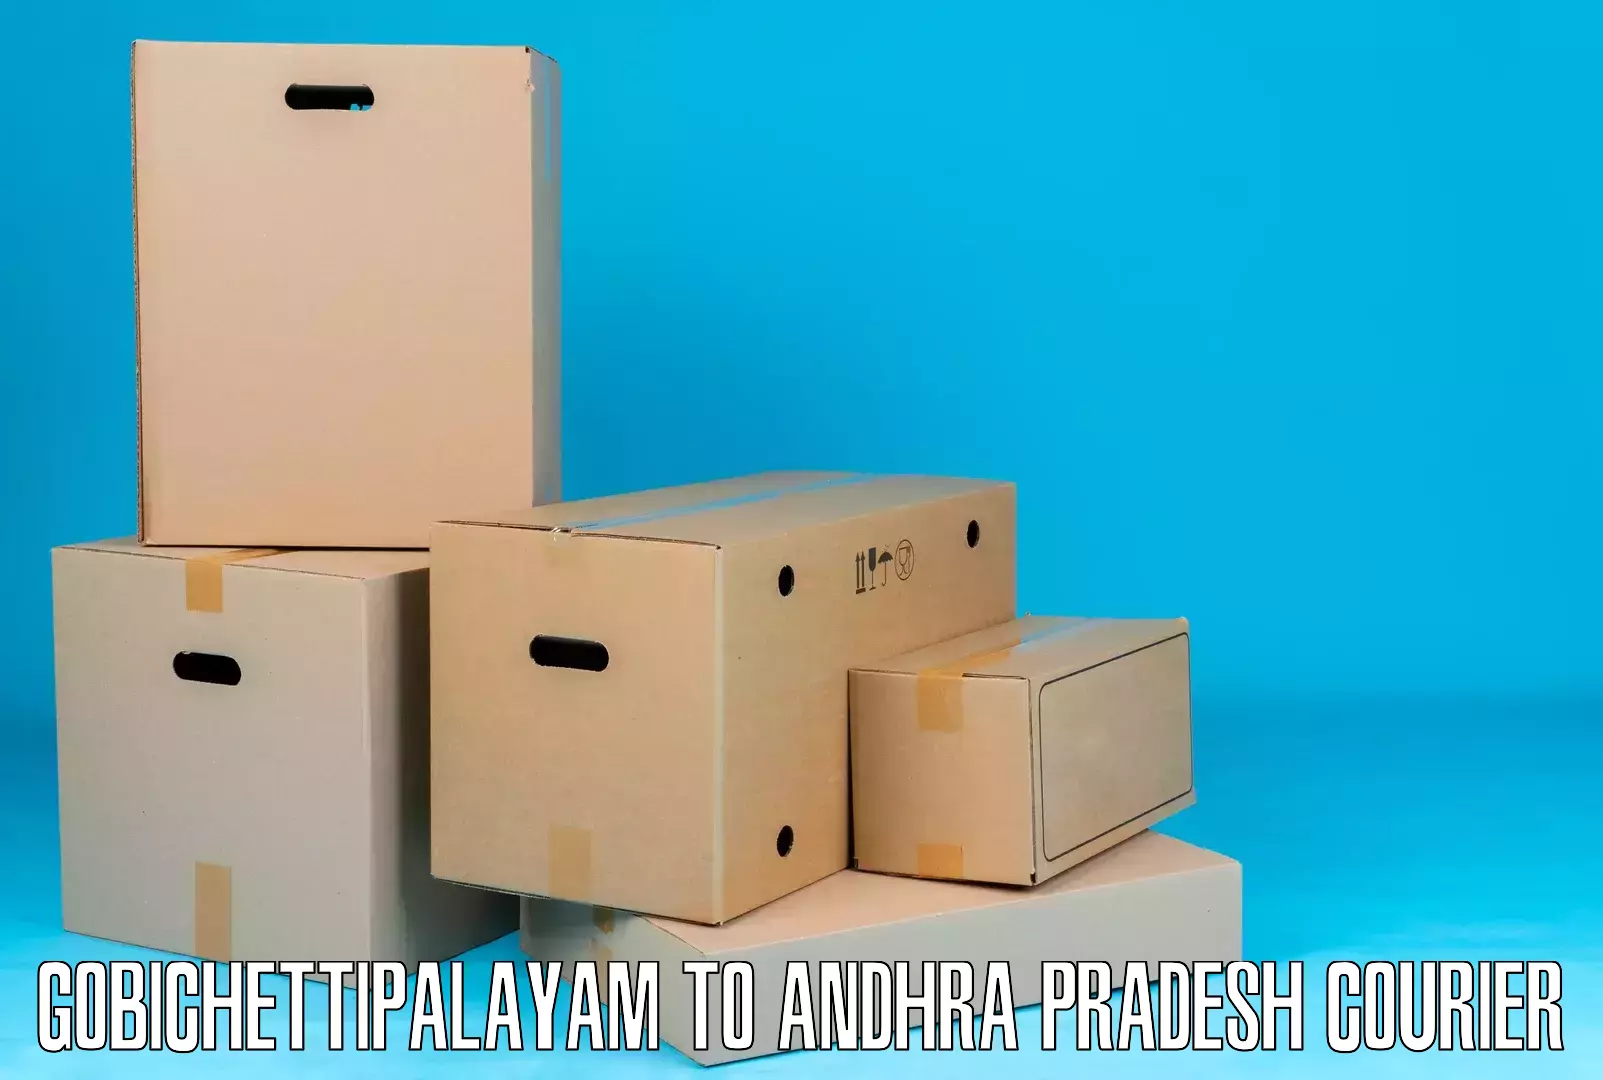 Next-generation courier services Gobichettipalayam to Betamcherla